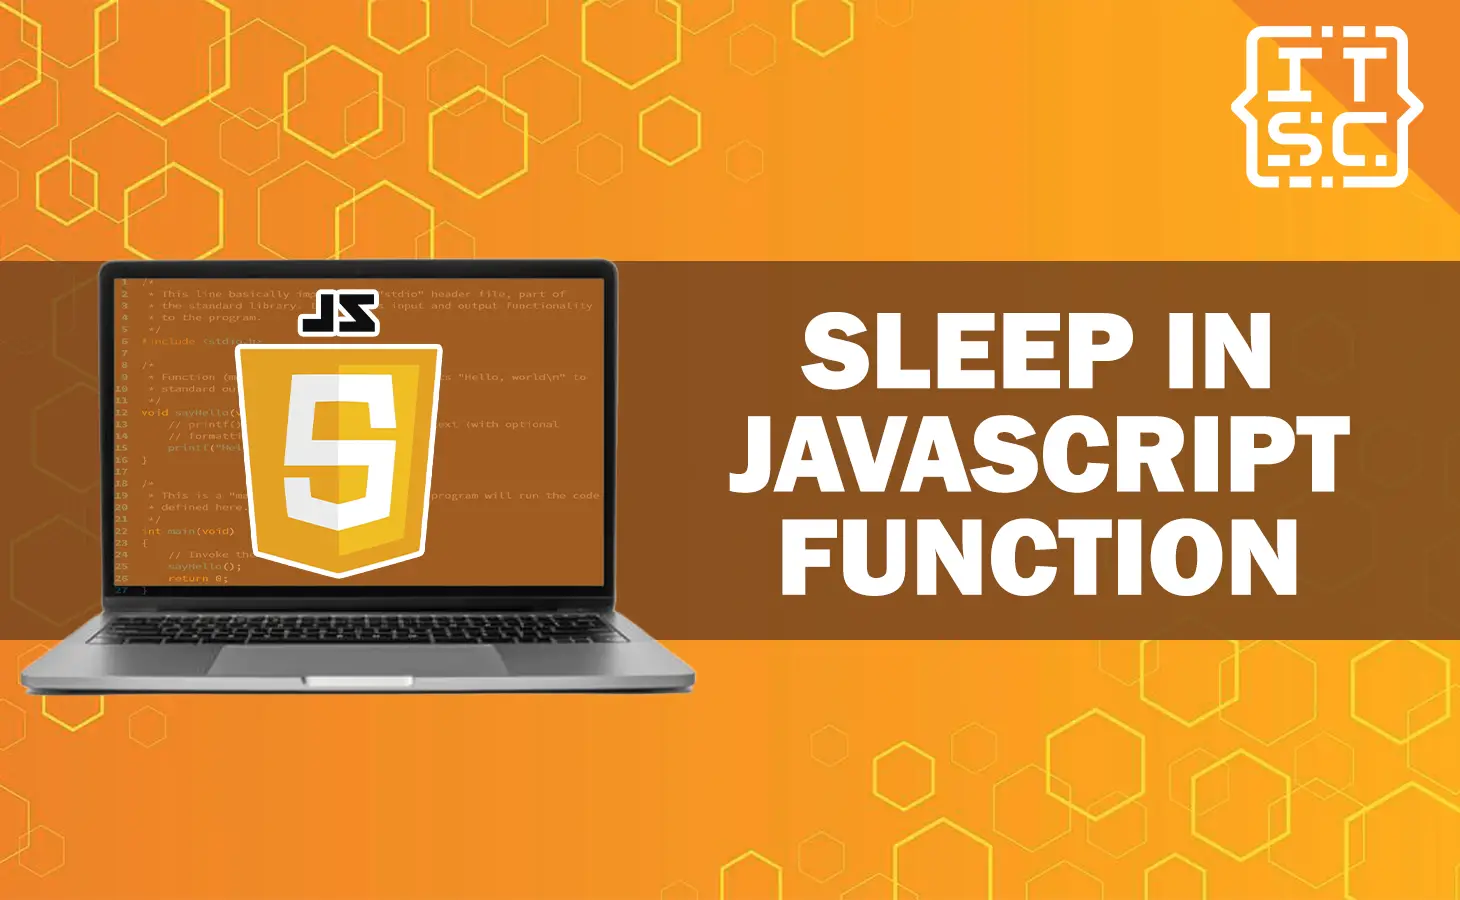 Sleep in JavaScript Functions